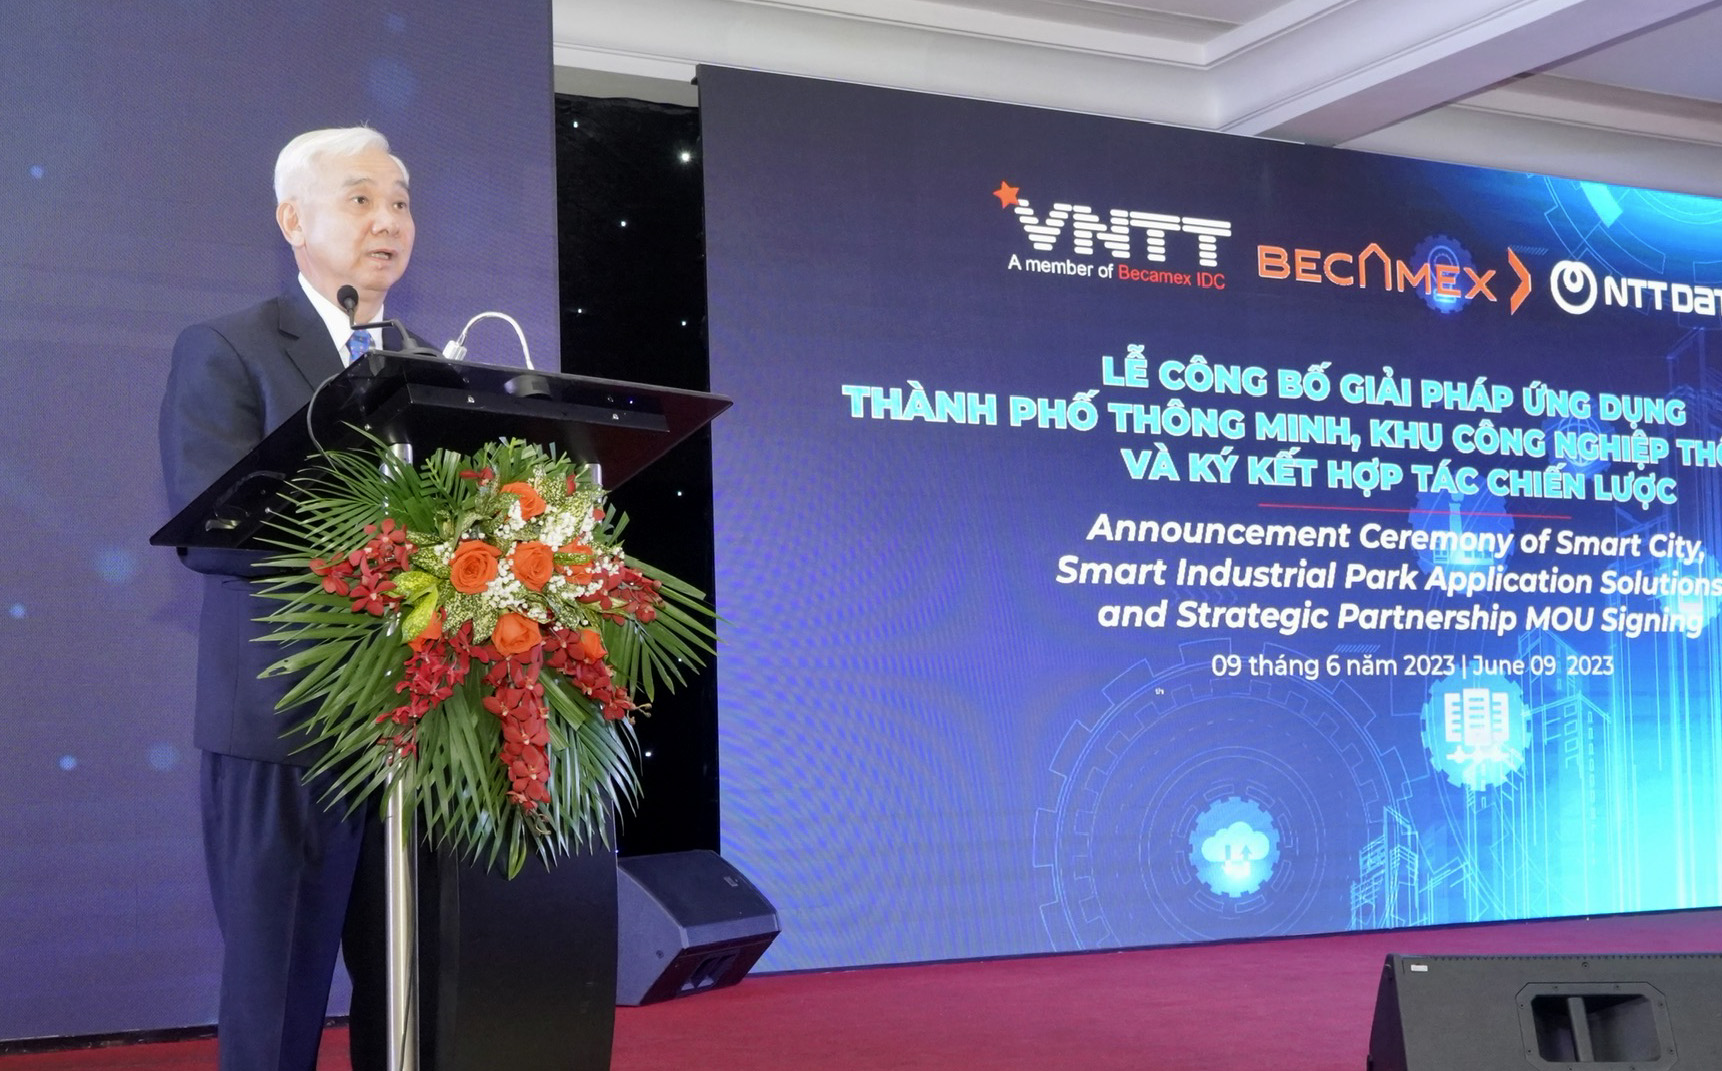 Đồng chí Phạm Ngọc Thuận – tổng giám đốc Becamex IDC phát biểu tại chương trình.